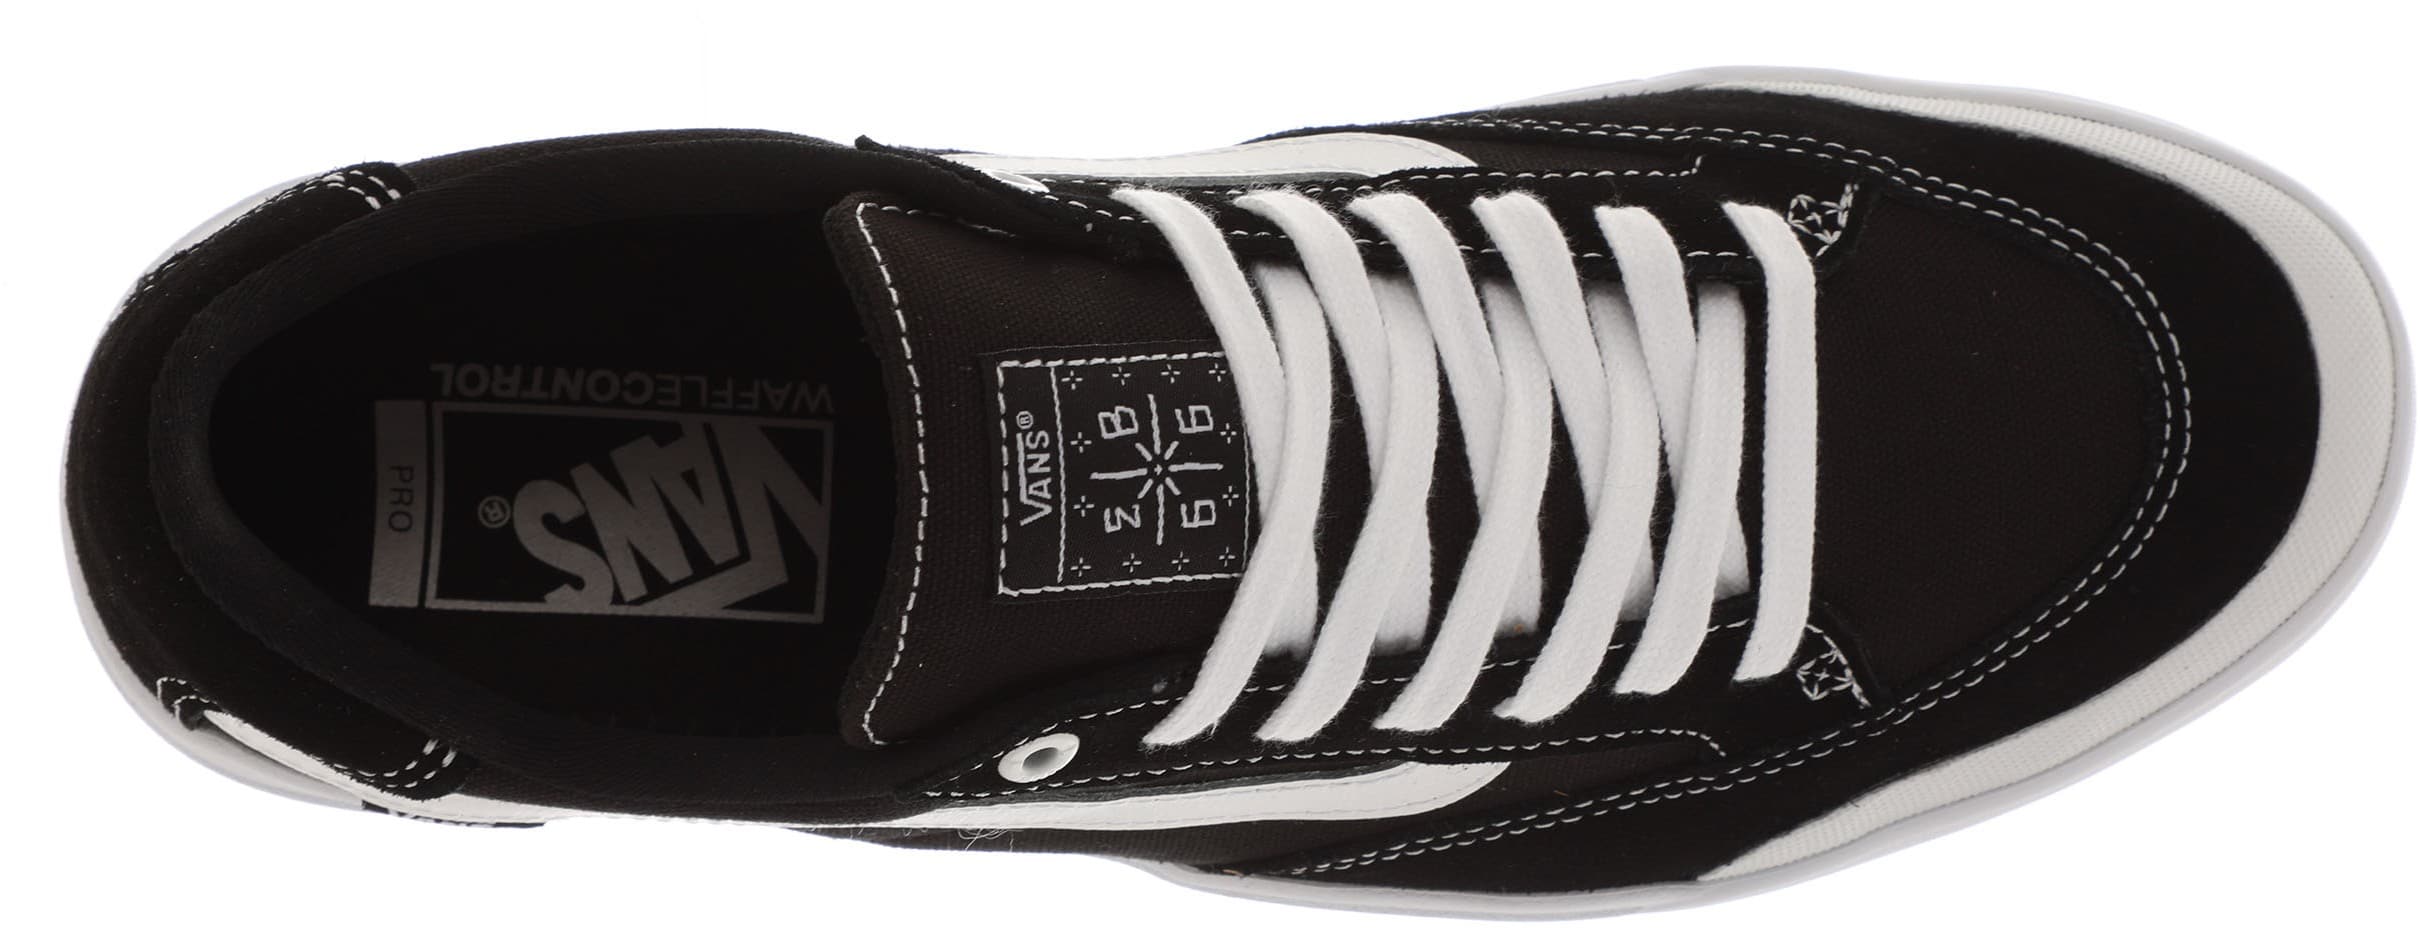 Vans Berle Pro Skate Shoes - black/true white | Tactics